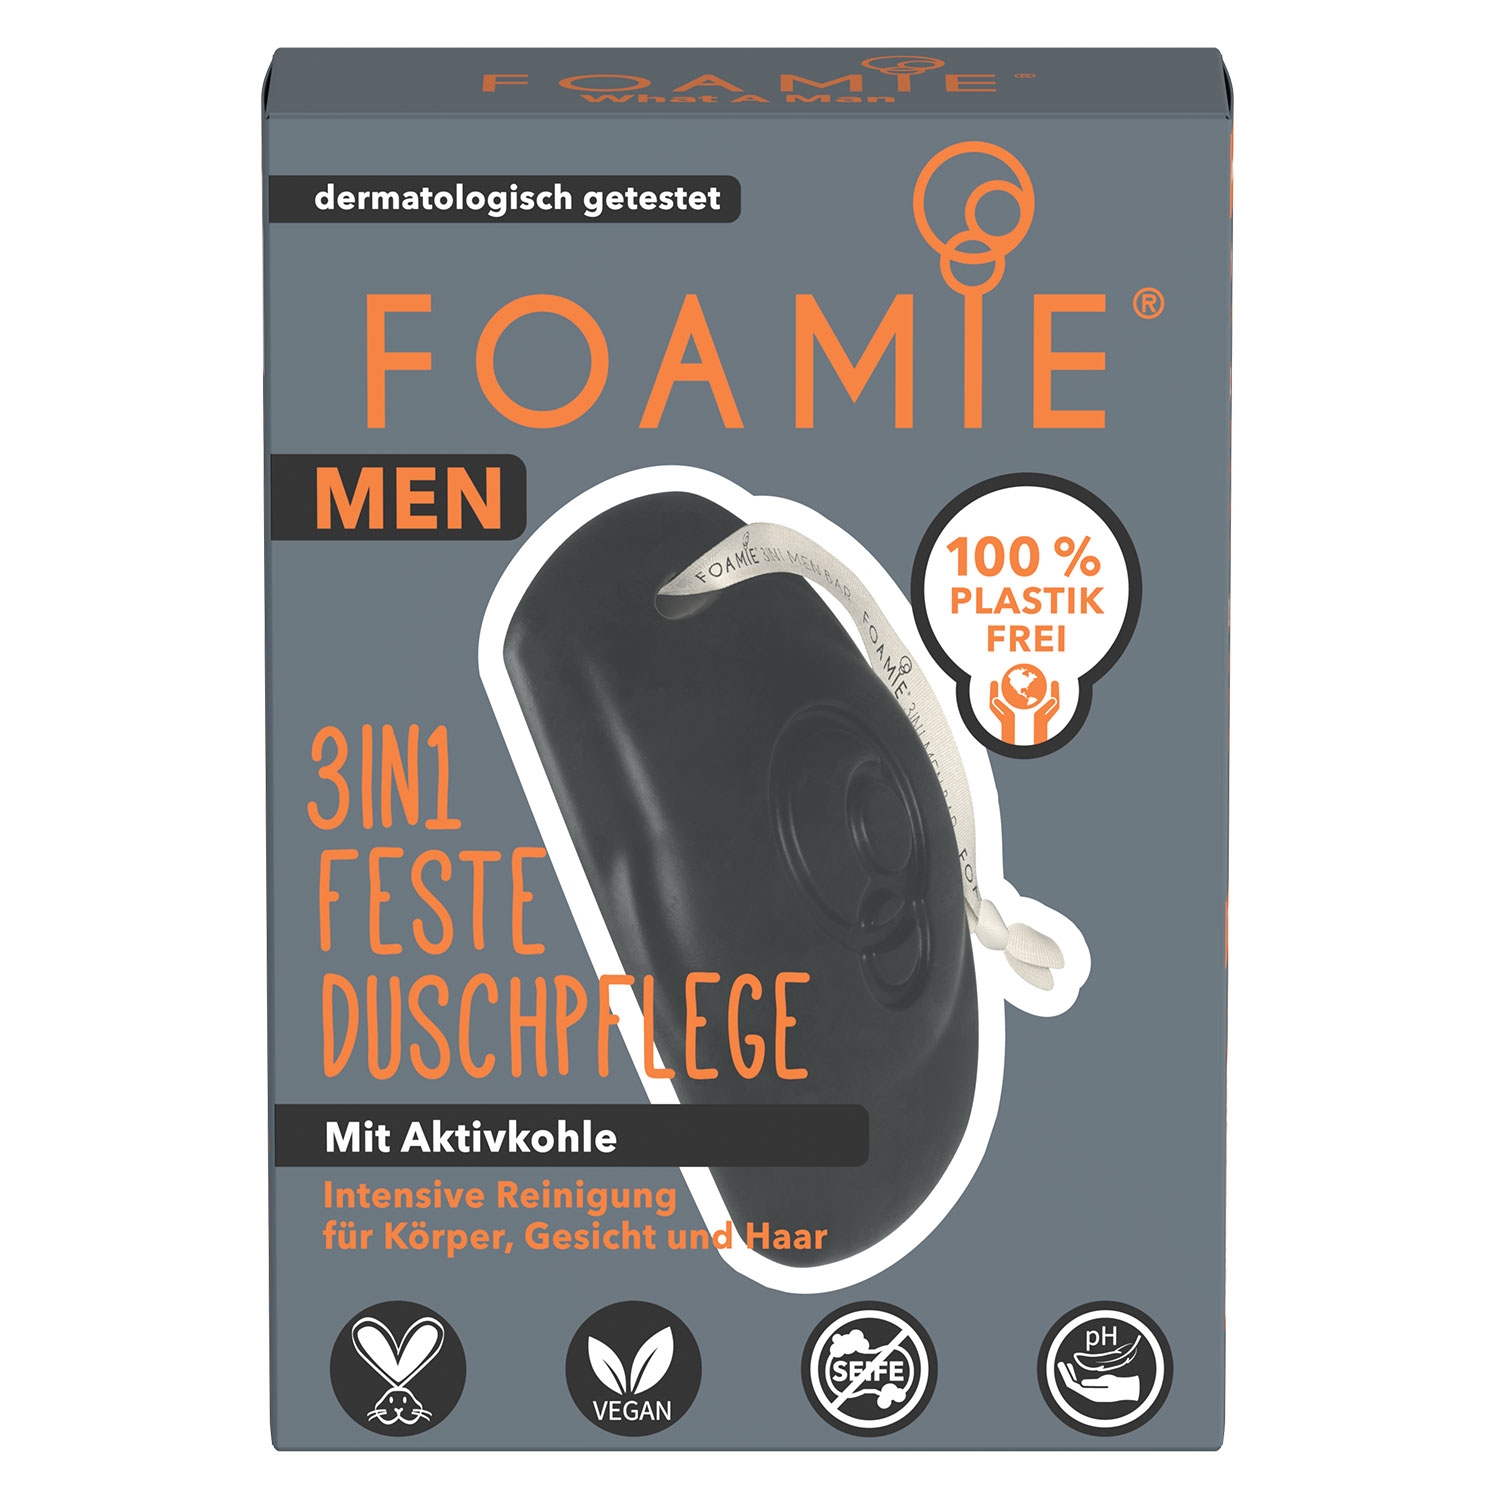 Produktbild von Foamie - Men 3in1 Feste Duschpflege What a Man